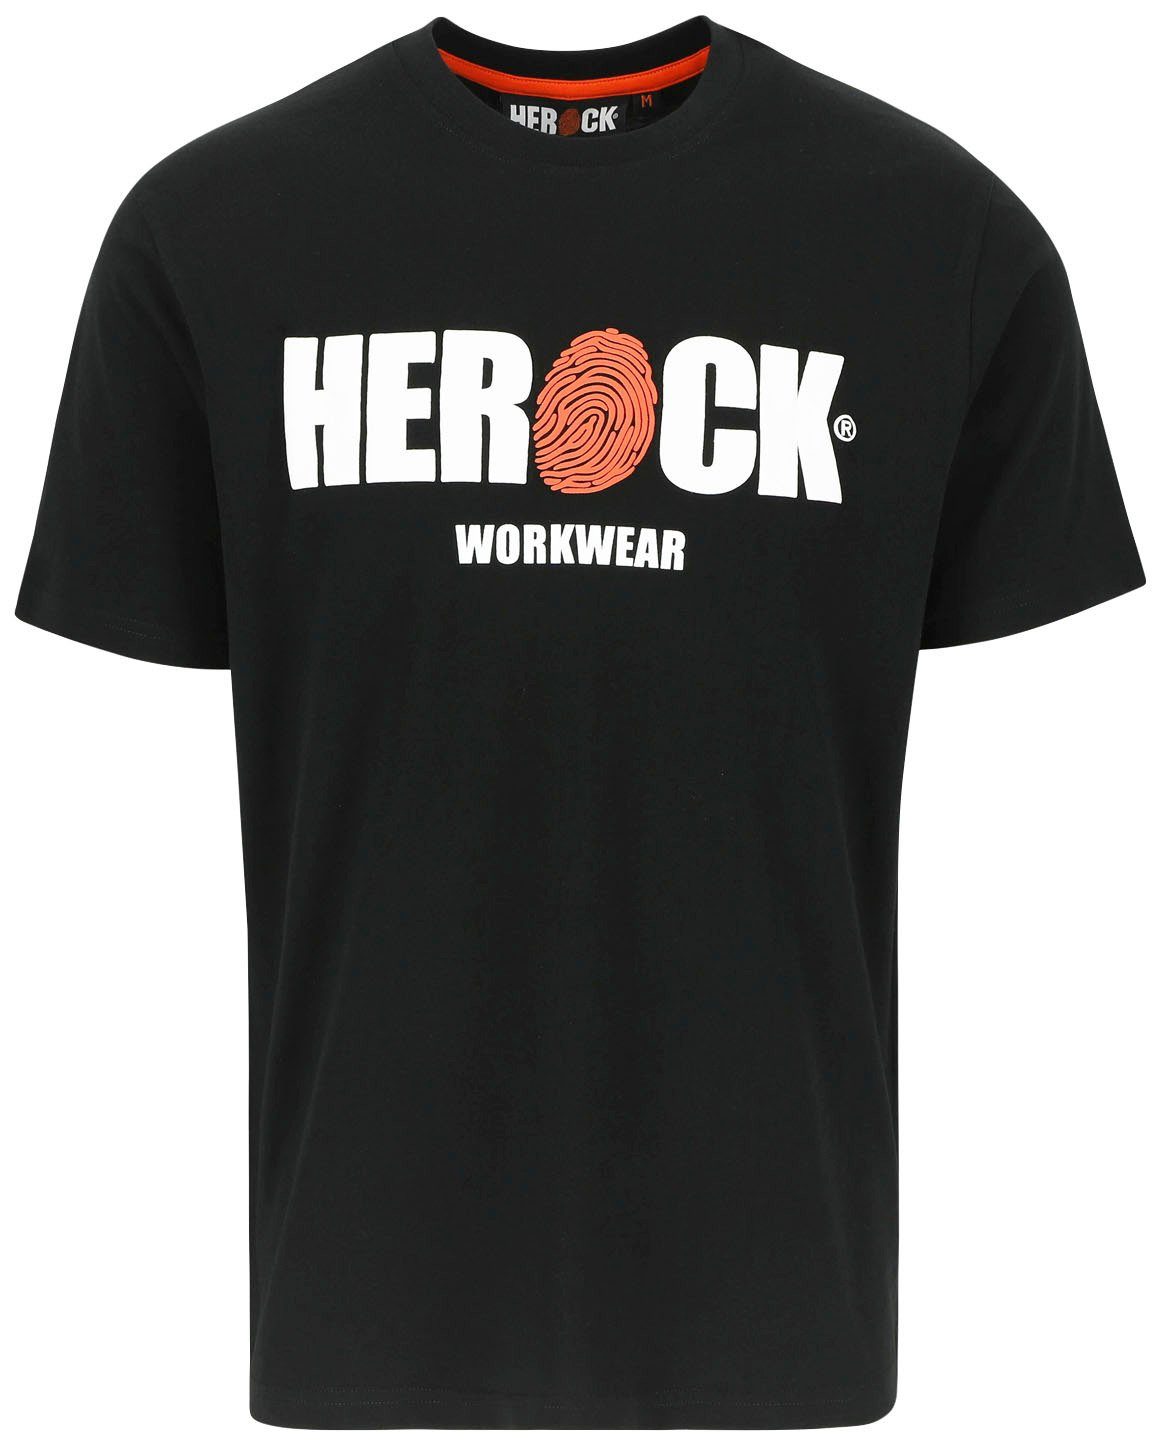 Baumwolle, angenehmes Herock®-Aufdruck, T-Shirt Herock schwarz Rundhals, mit Tragegefühl ENI